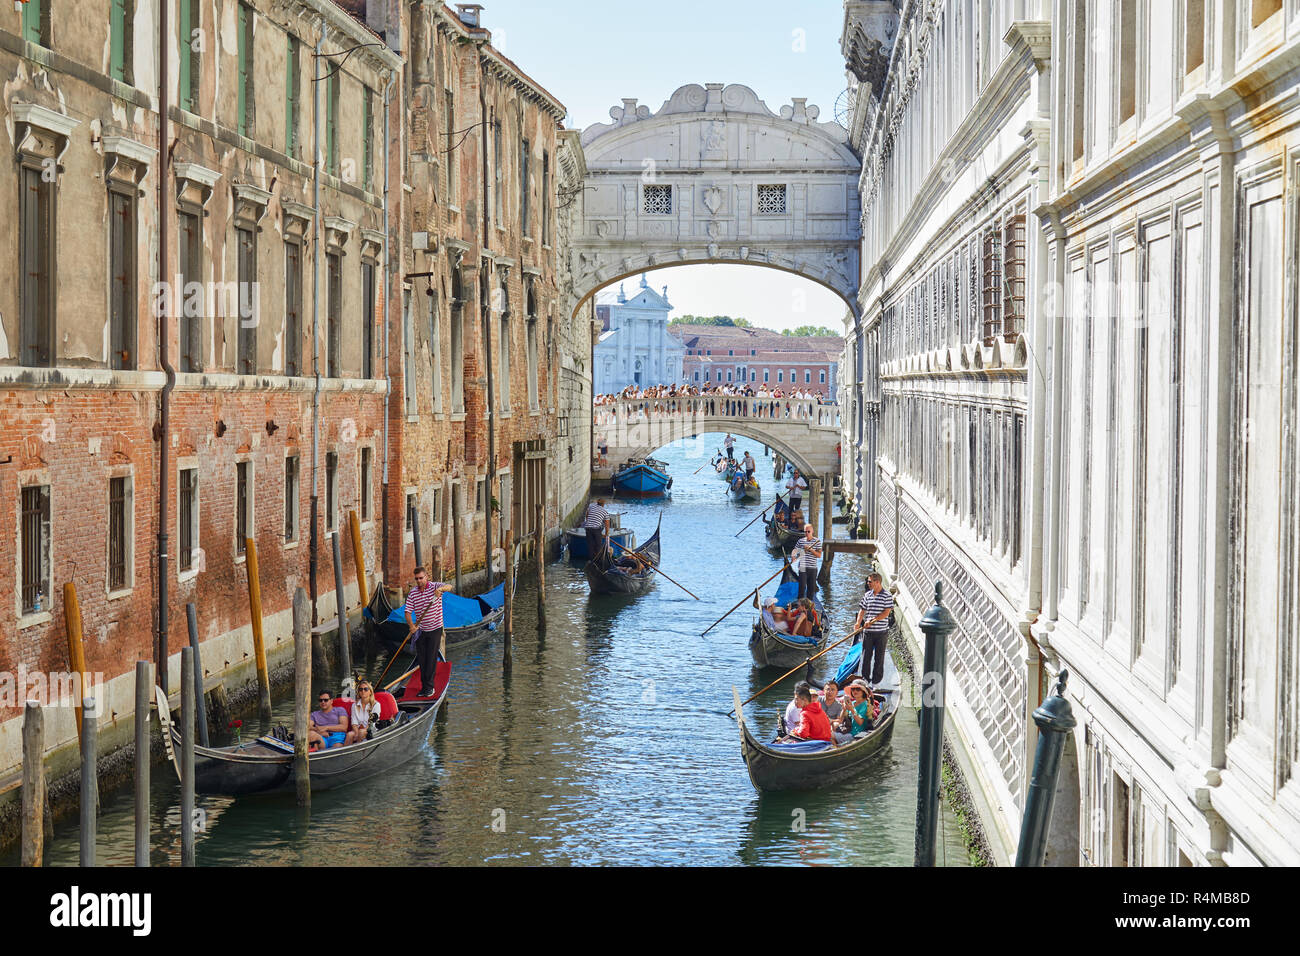 Venezia, Italia - 14 agosto 2017: Ponte dei Sospiri, le persone e i turisti in gondola barche in canale in una soleggiata giornata estiva a Venezia, Italia Foto Stock